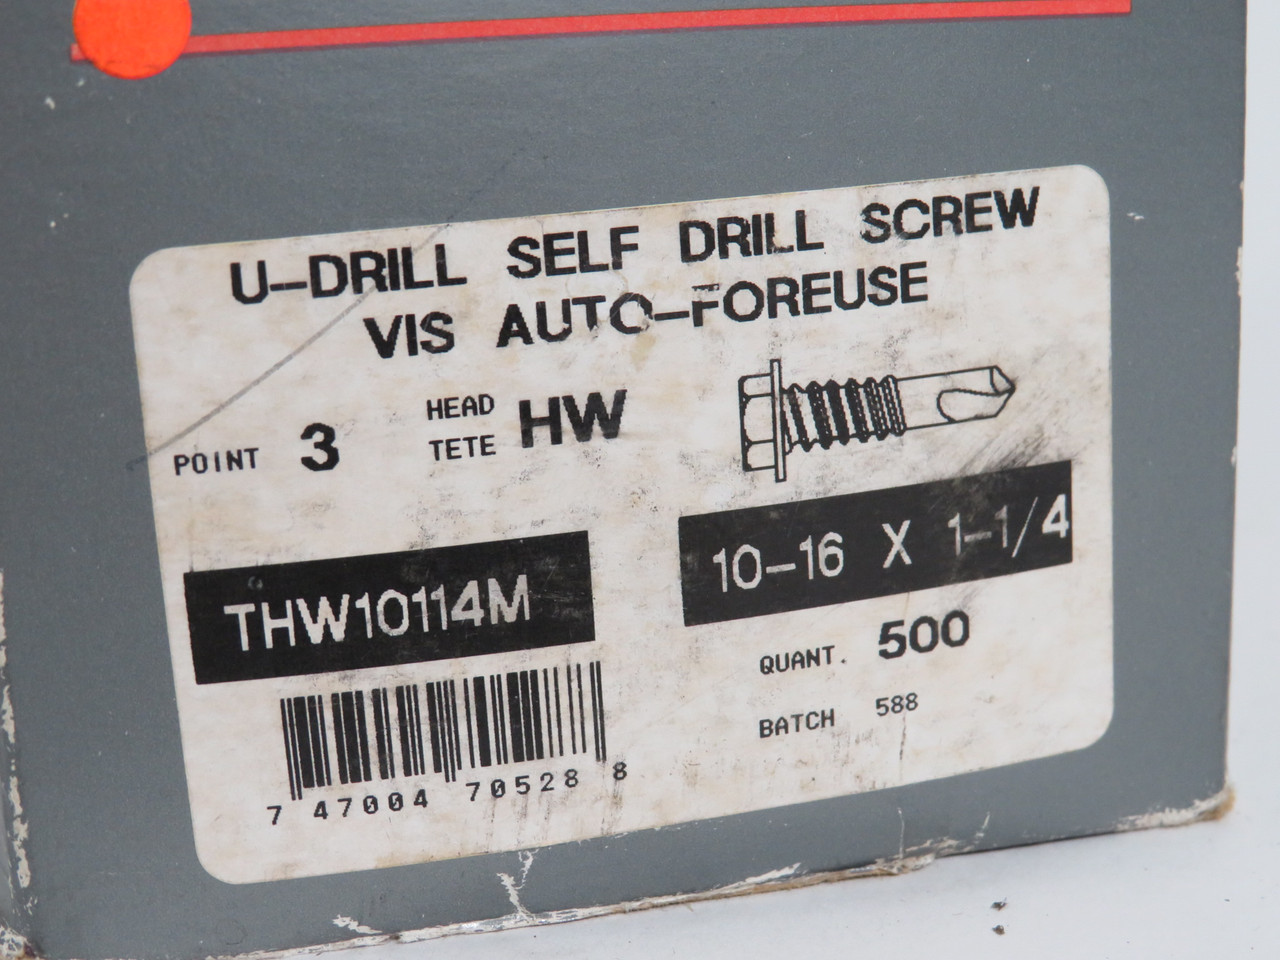 UCAN THW10114M U-Drill Self Drill Screw 10-16 x 1-1/4" Lot of 328 NEW